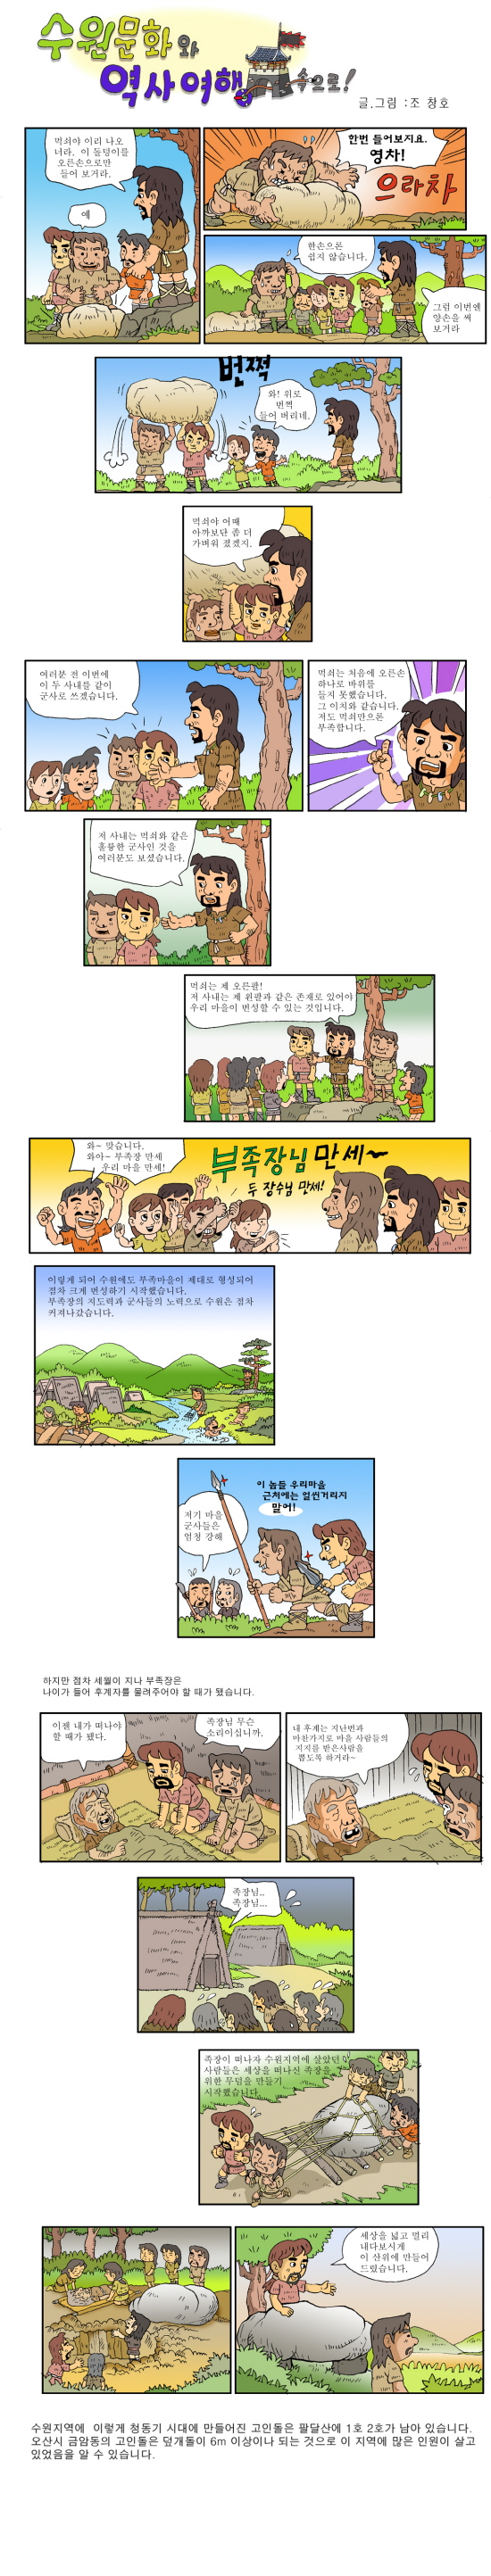 [역사만화] 수원문화와 역사여행속으로_2